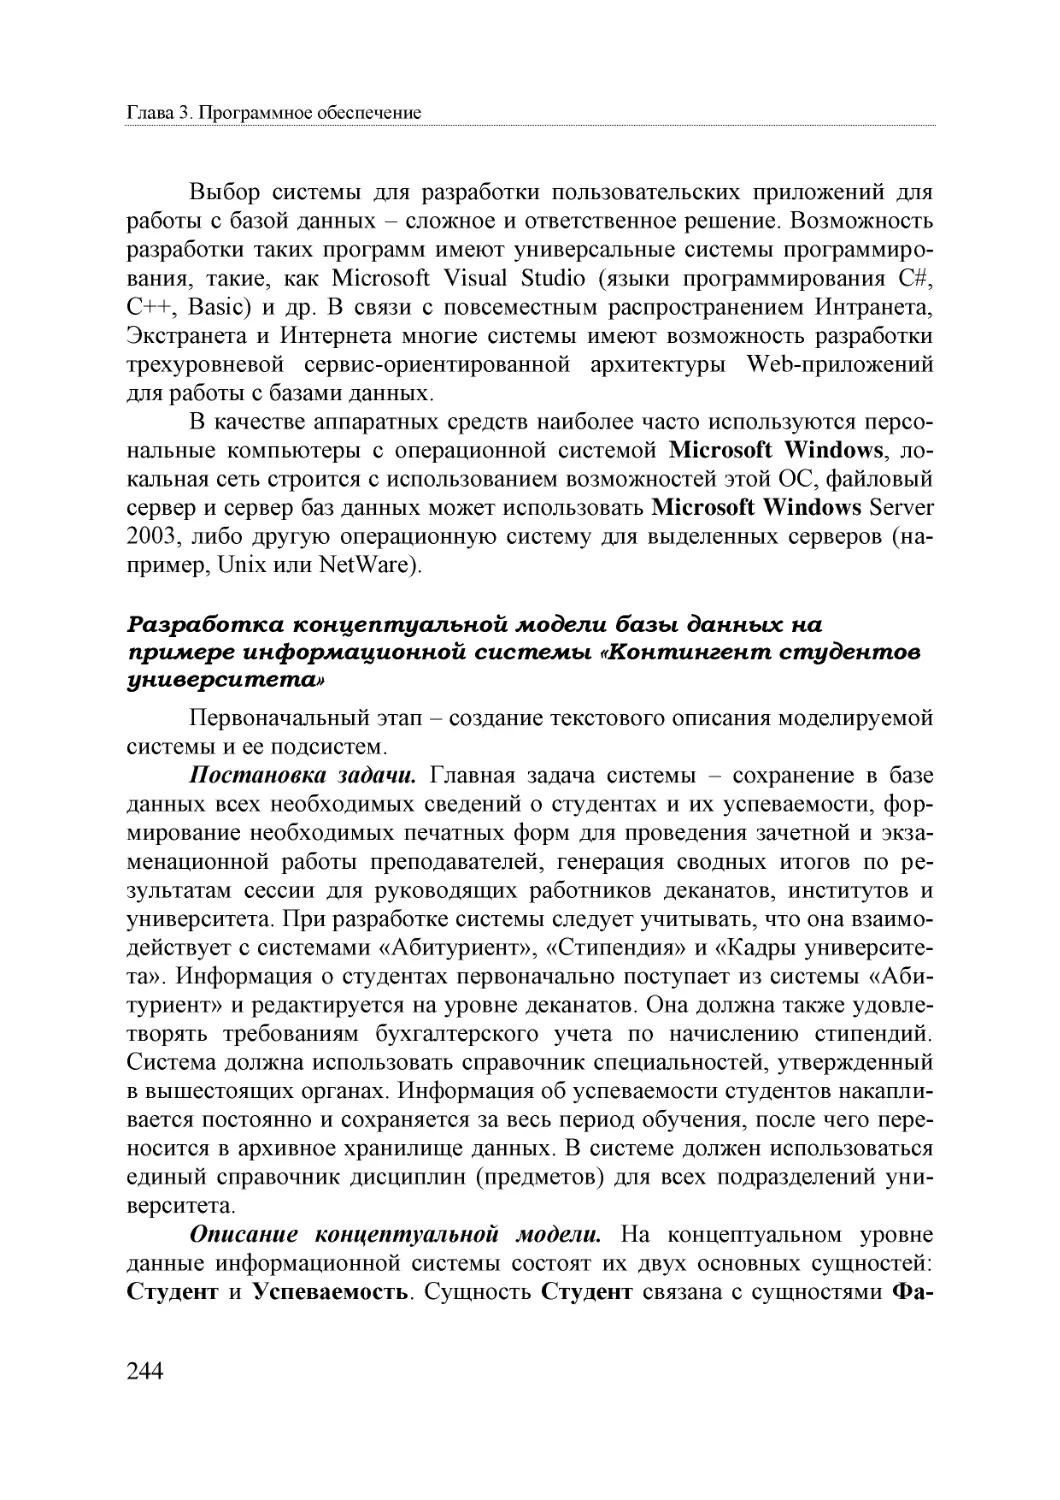 Informatika_Uchebnik_dlya_vuzov_2010 244